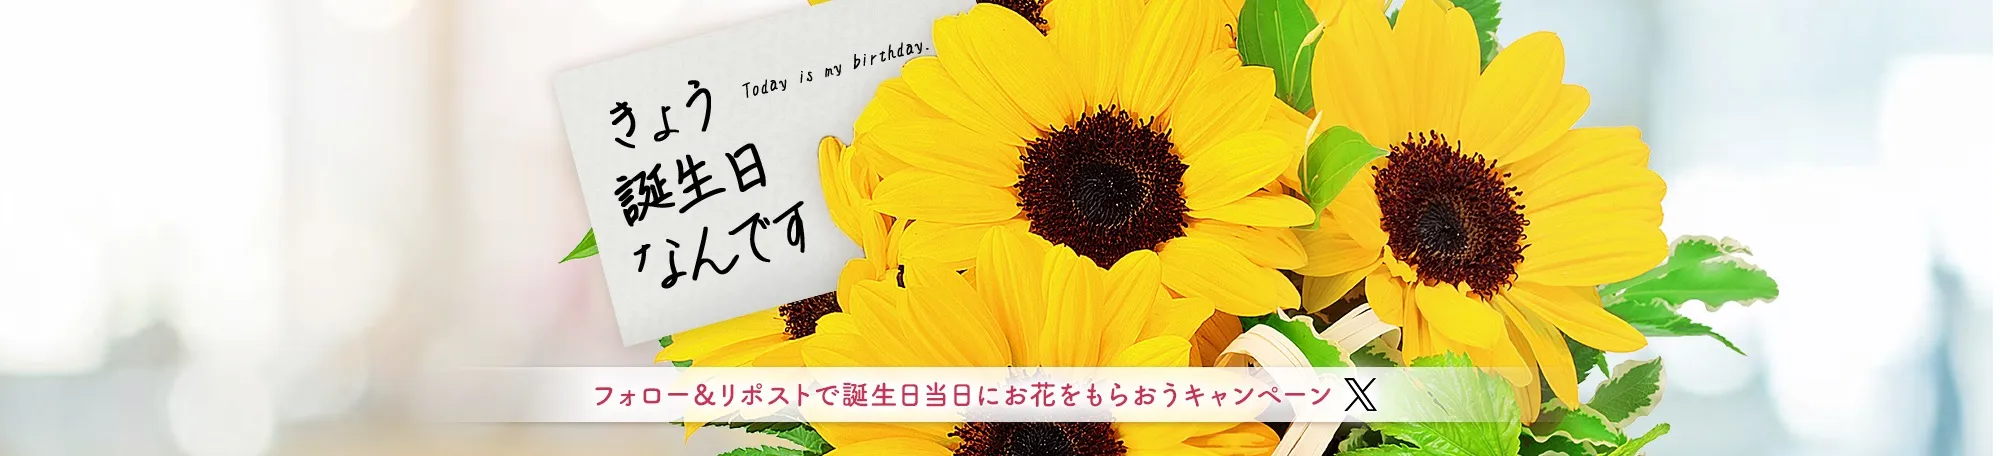 フォロー＆RTで誕生日当日に花束をもらおうキャンペーン